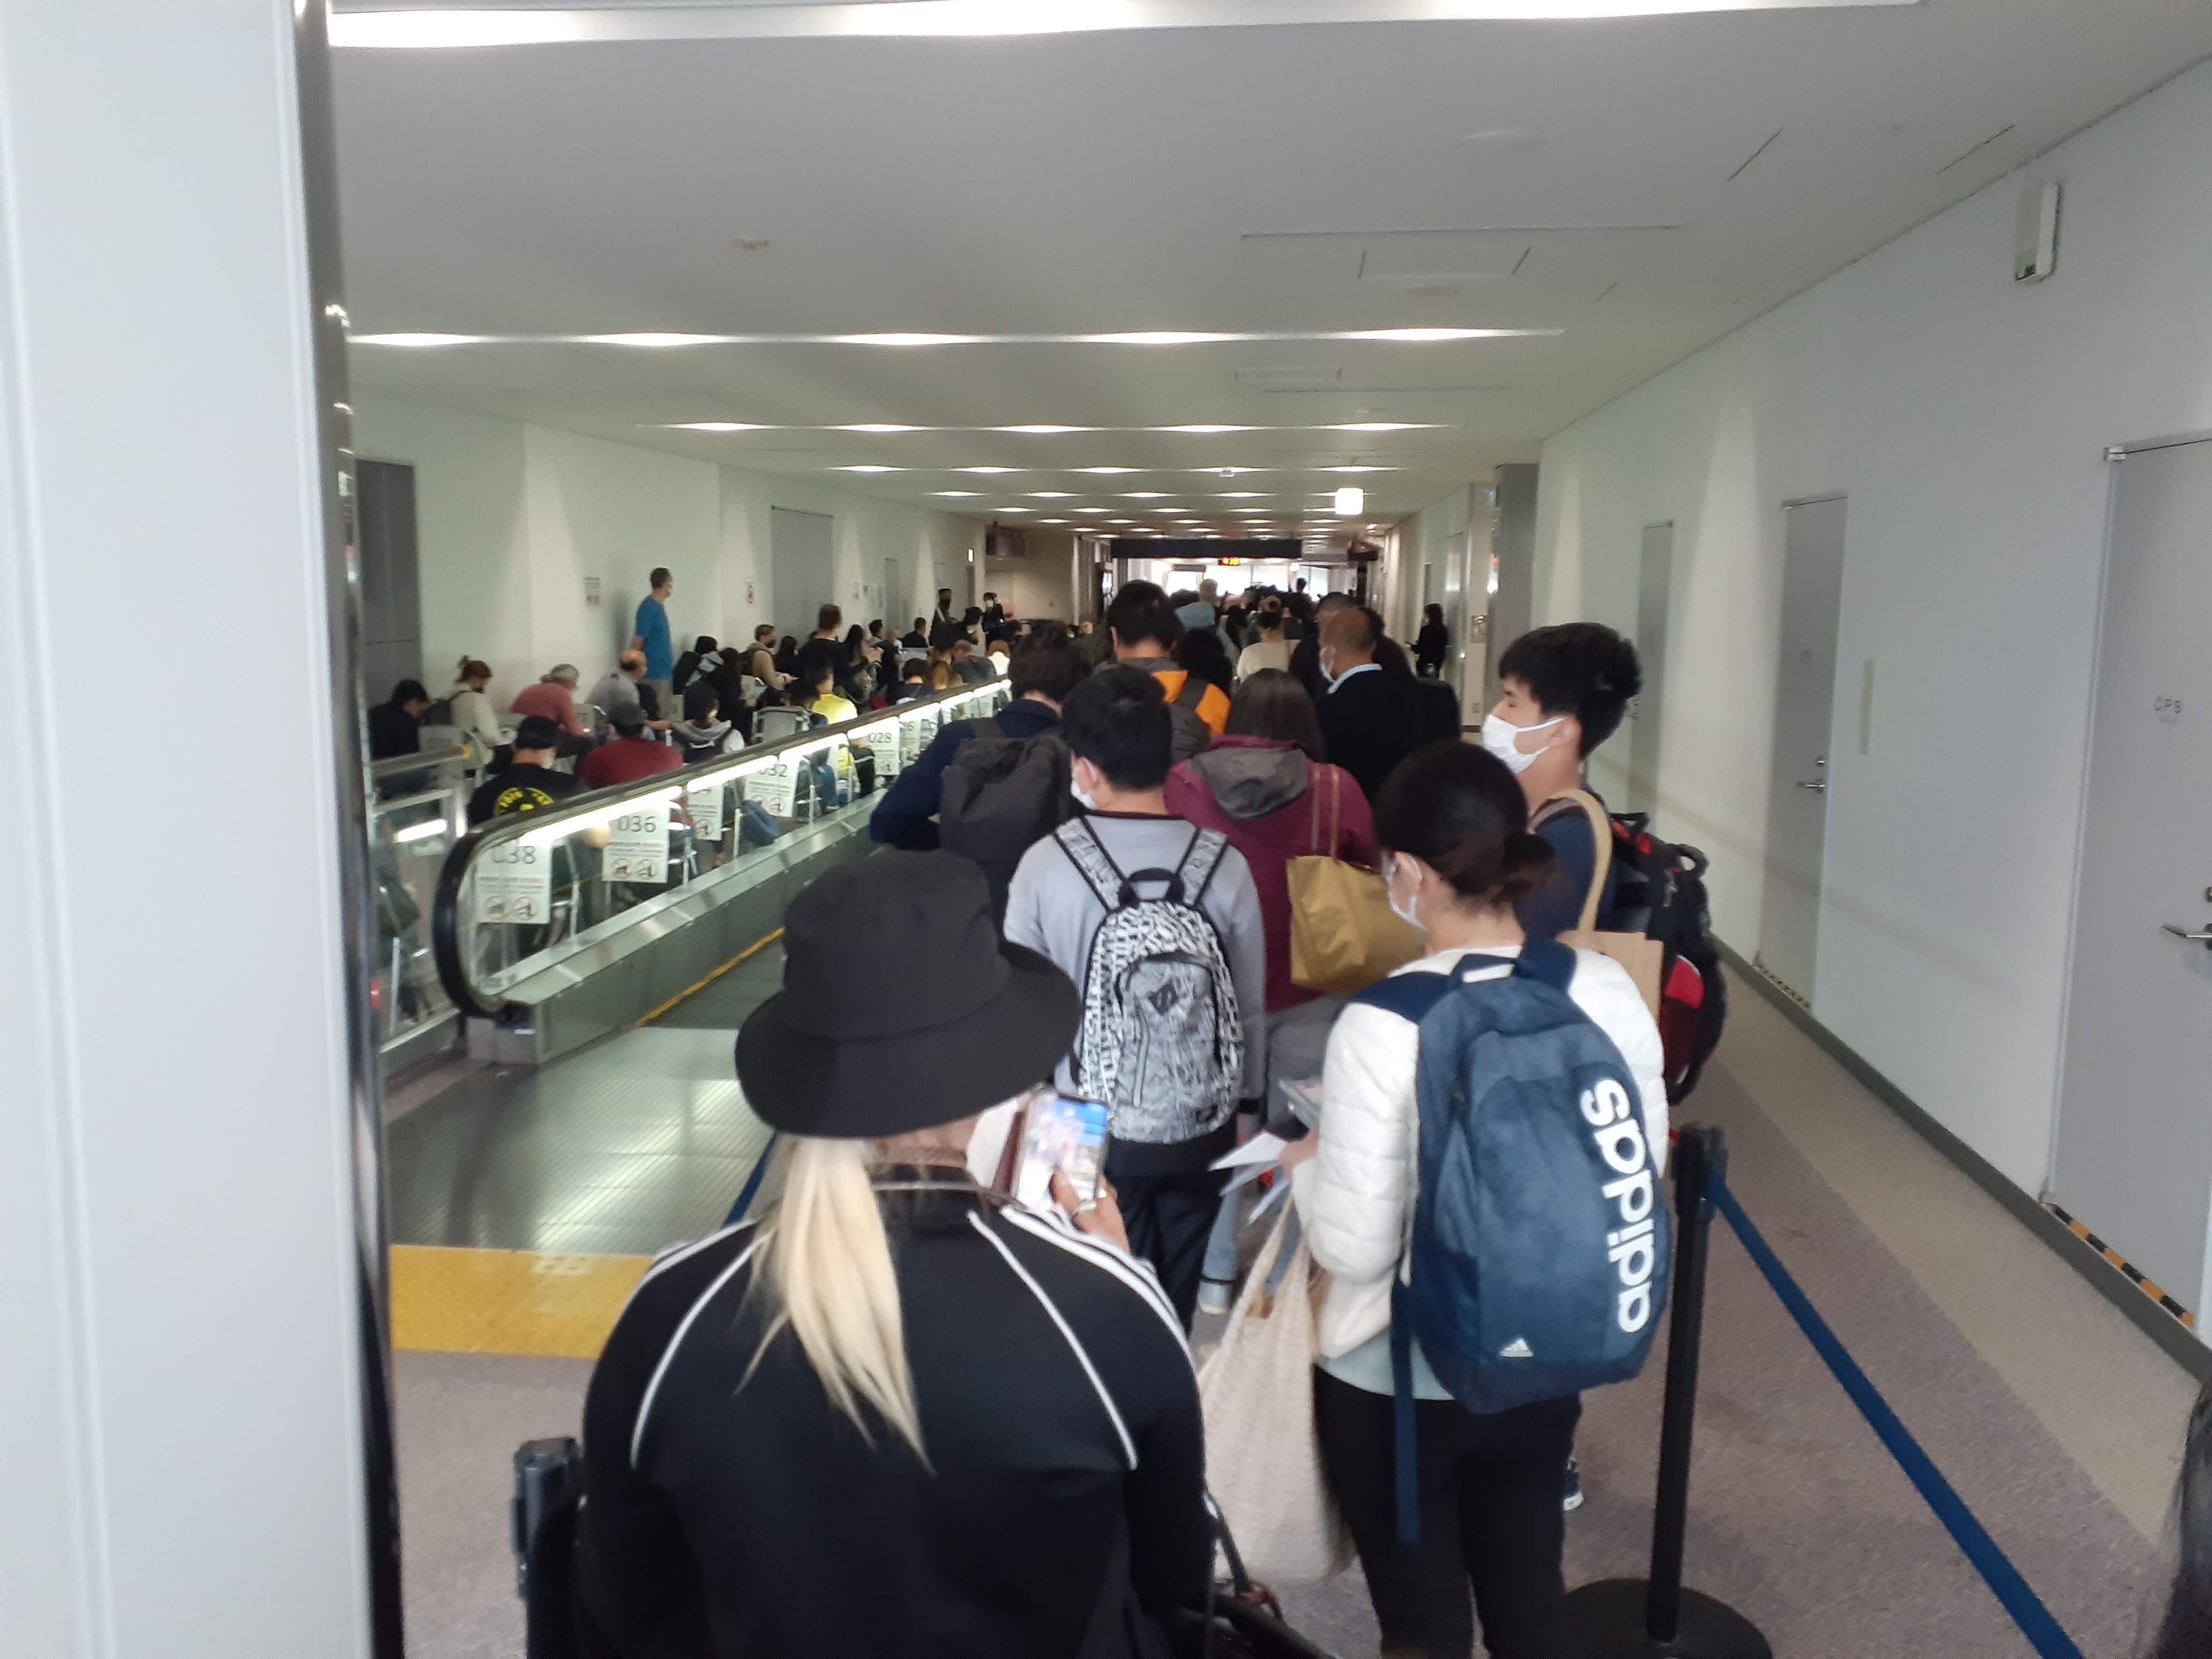 A long queue at Narita Airport